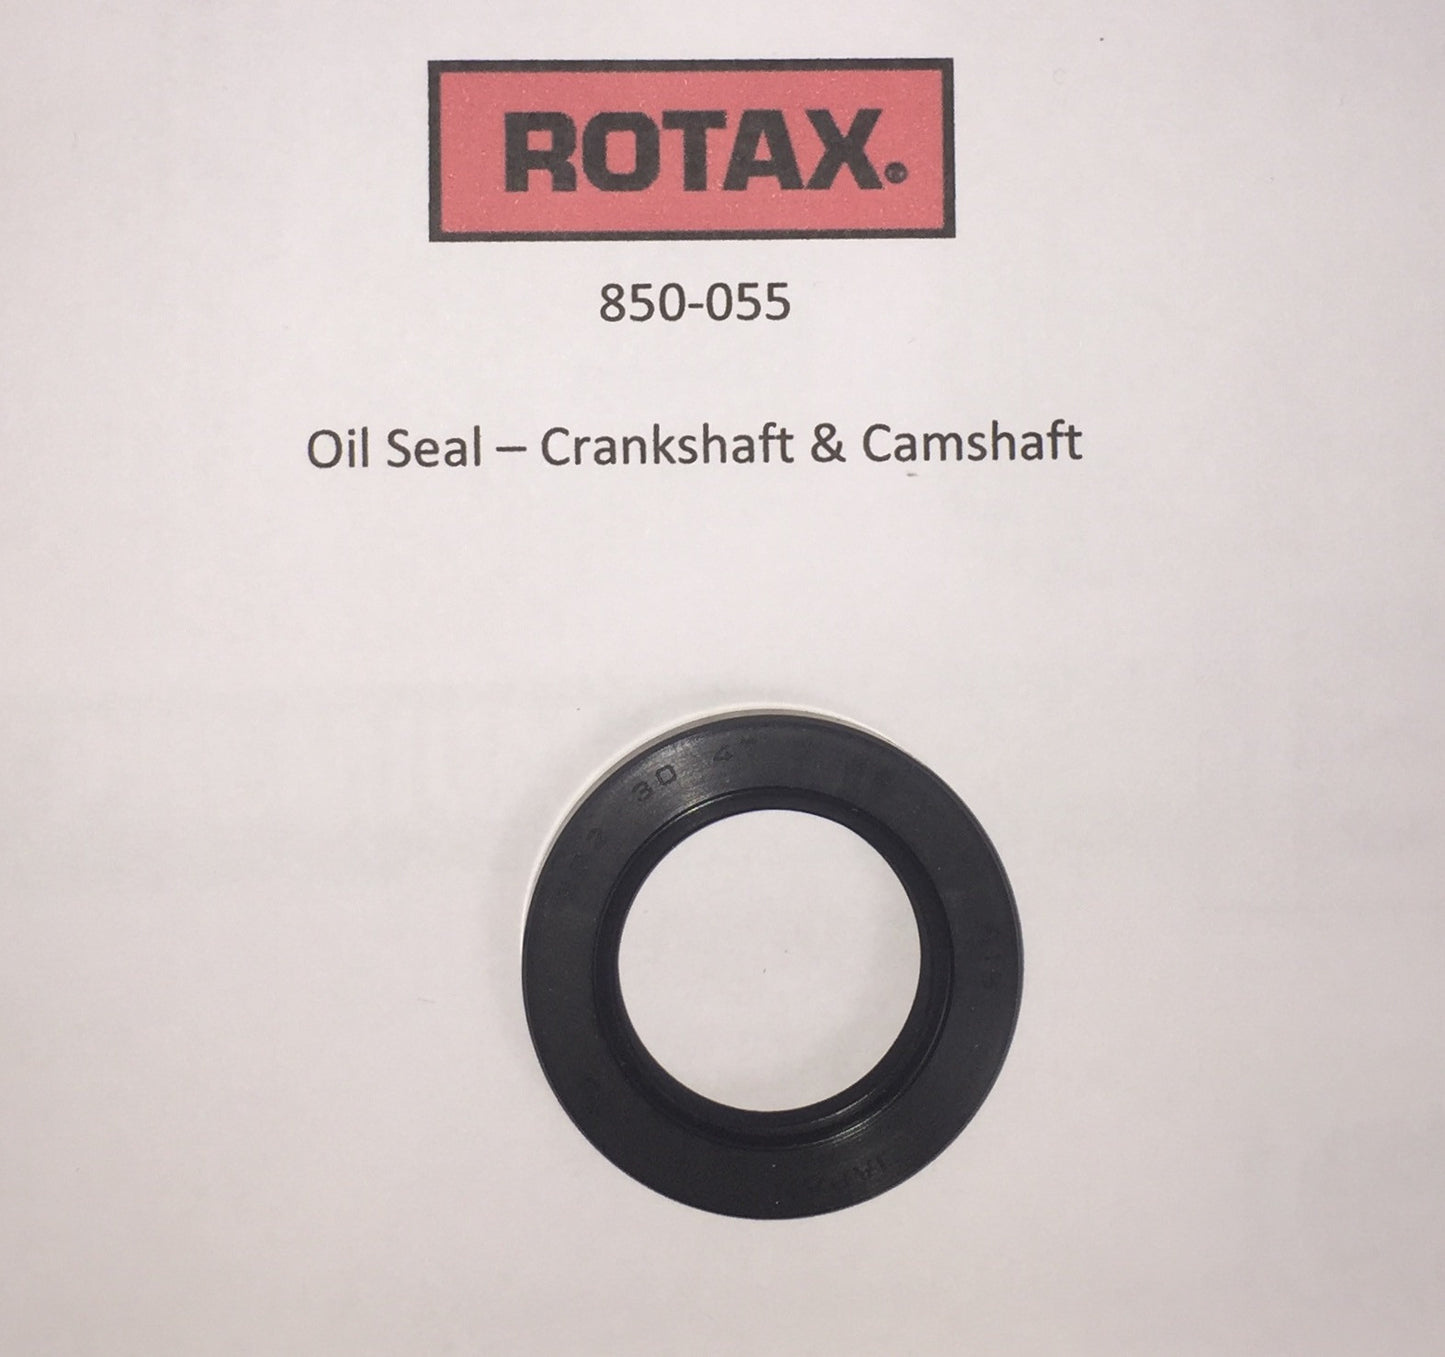 850-055 - Oil Seal - Crankshaft & Camshaft